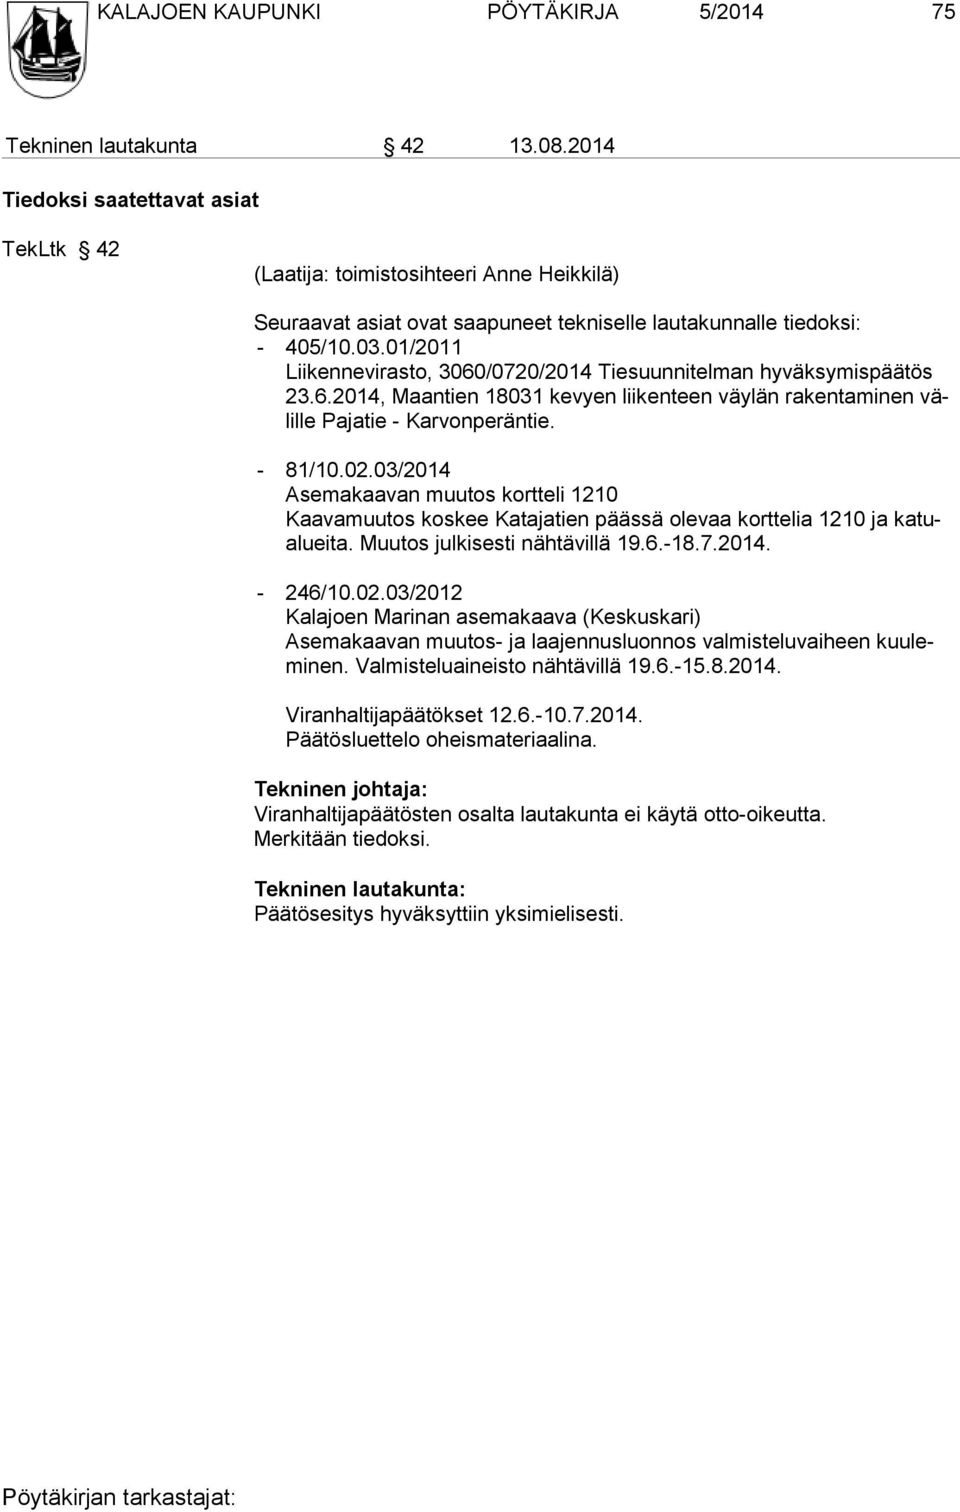 01/2011 Liikennevirasto, 3060/0720/2014 Tiesuunnitelman hyväksymispäätös 23.6.2014, Maantien 18031 kevyen liikenteen väylän rakentaminen välille Pajatie - Karvonperäntie. - 81/10.02.